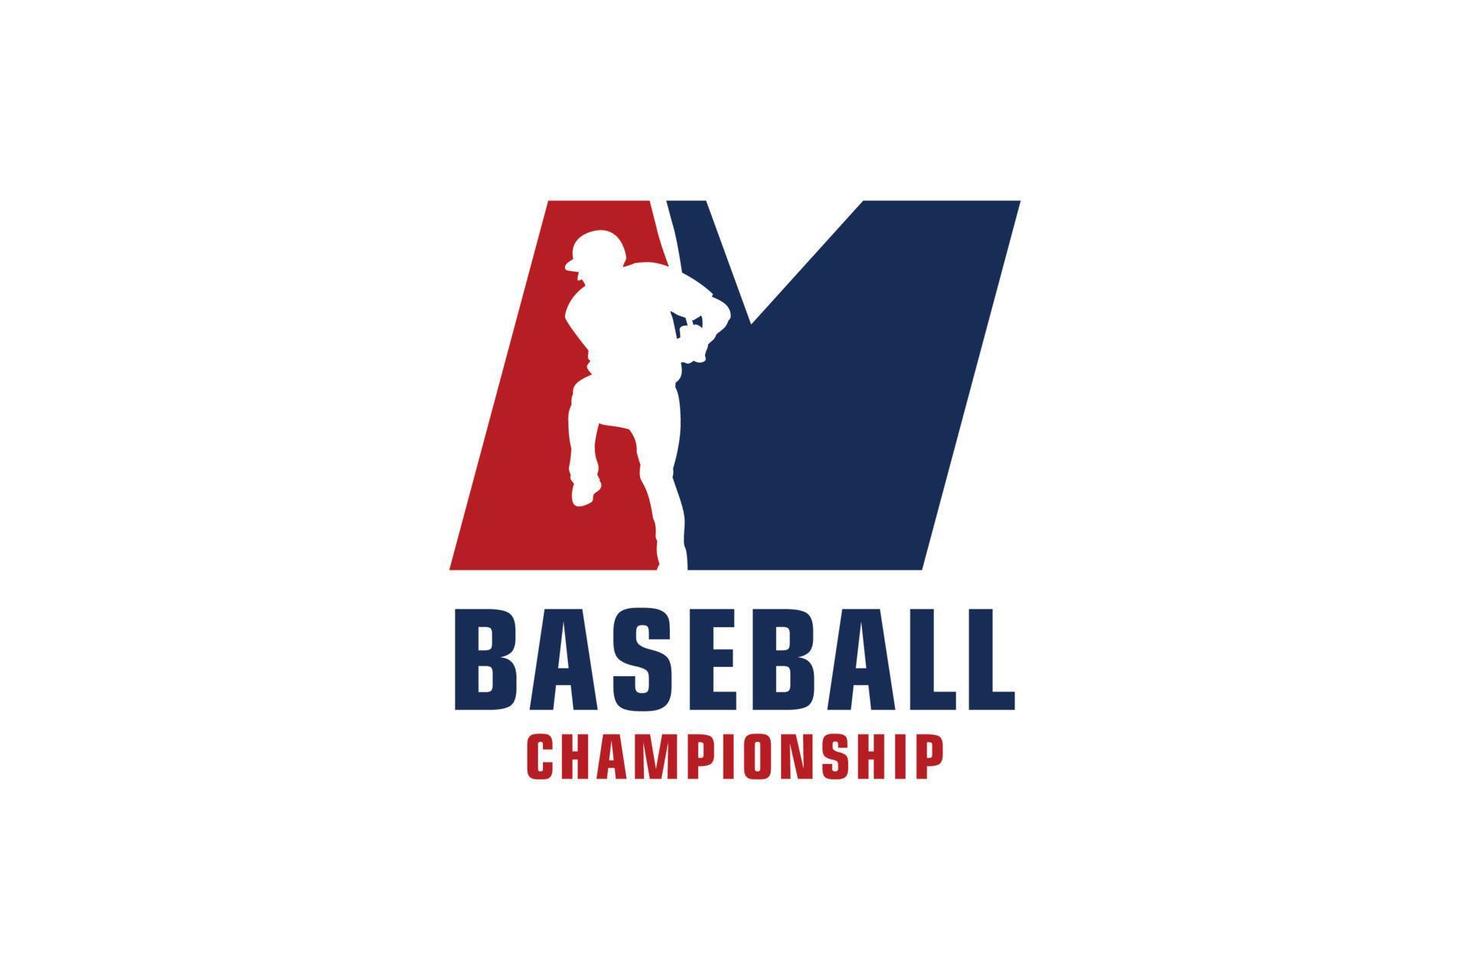 Buchstabe m mit Baseball-Logo-Design. Vektordesign-Vorlagenelemente für Sportteams oder Corporate Identity. vektor